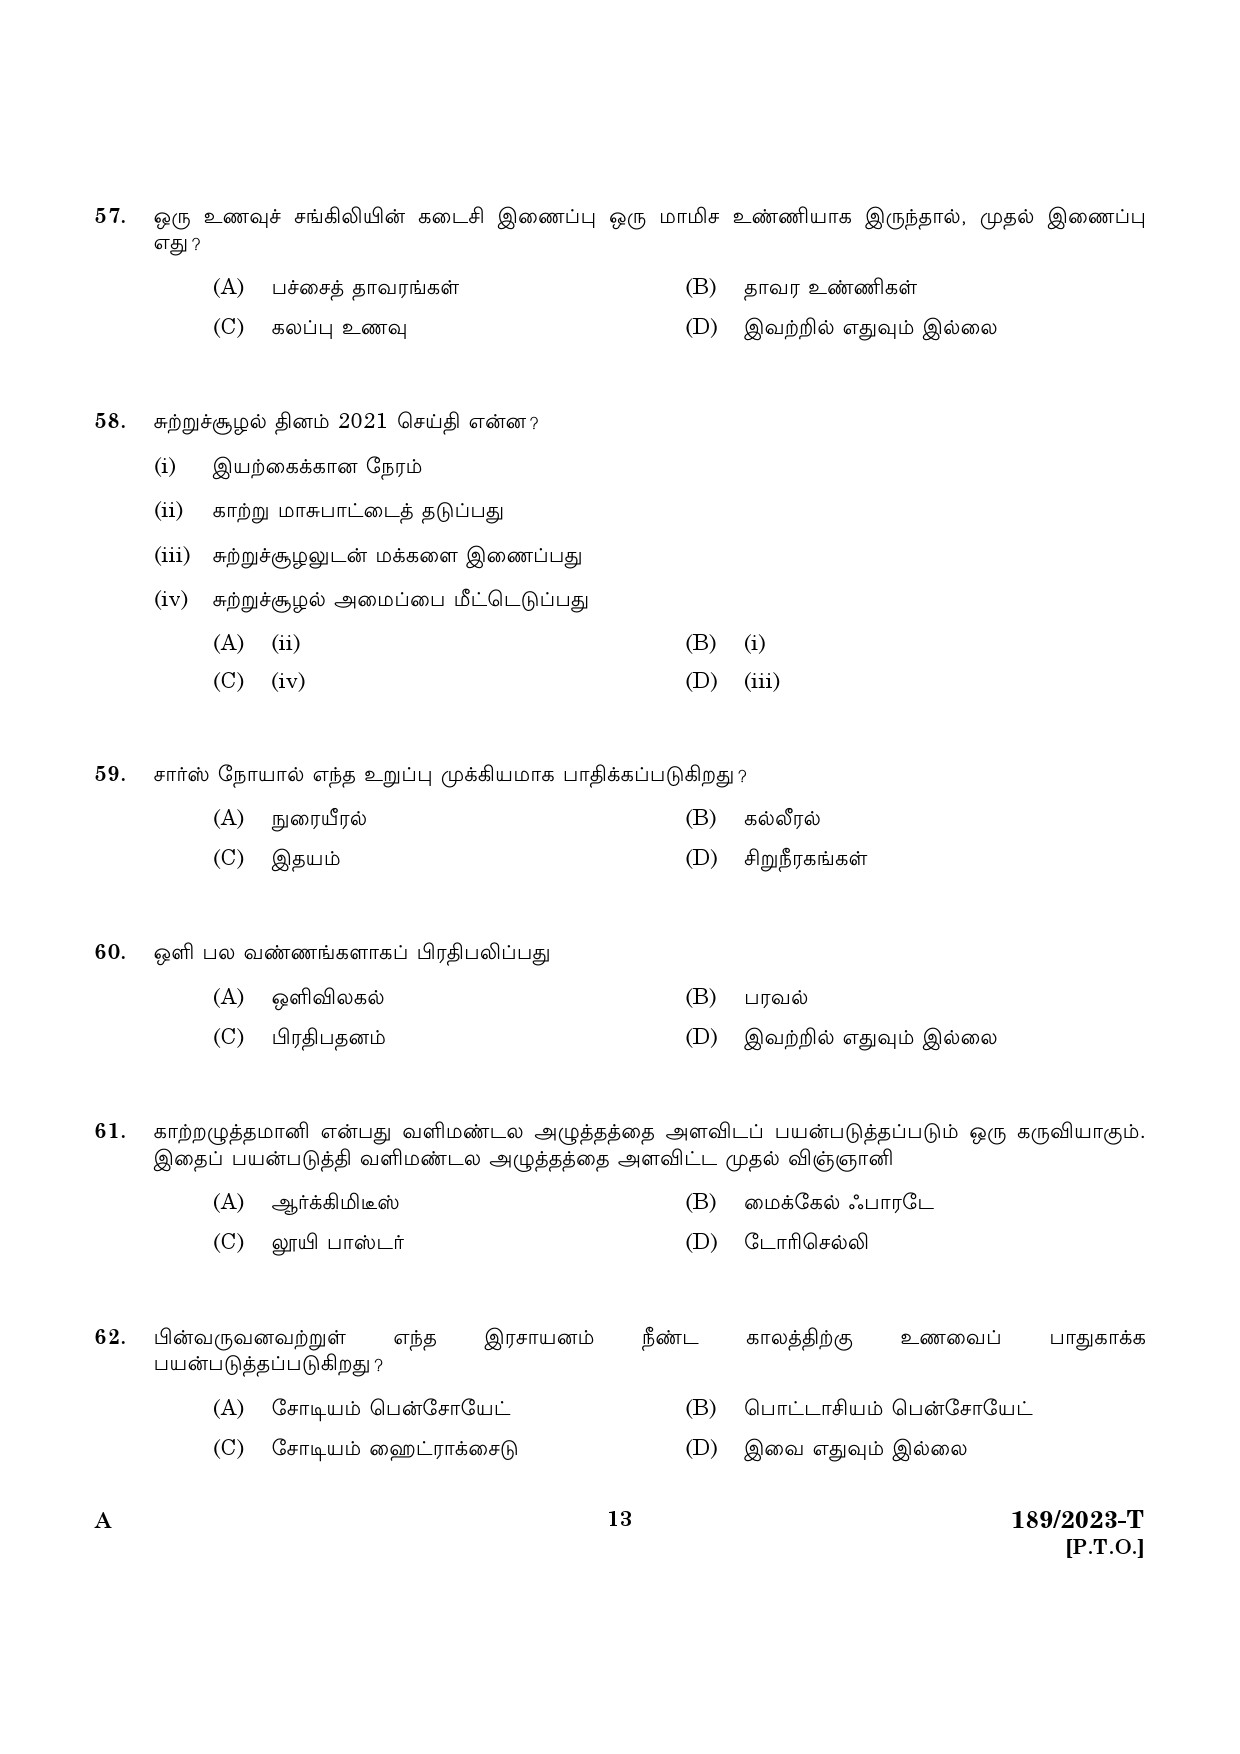 KPSC LGS Tamil Exam 2023 Code 1892023 T 11